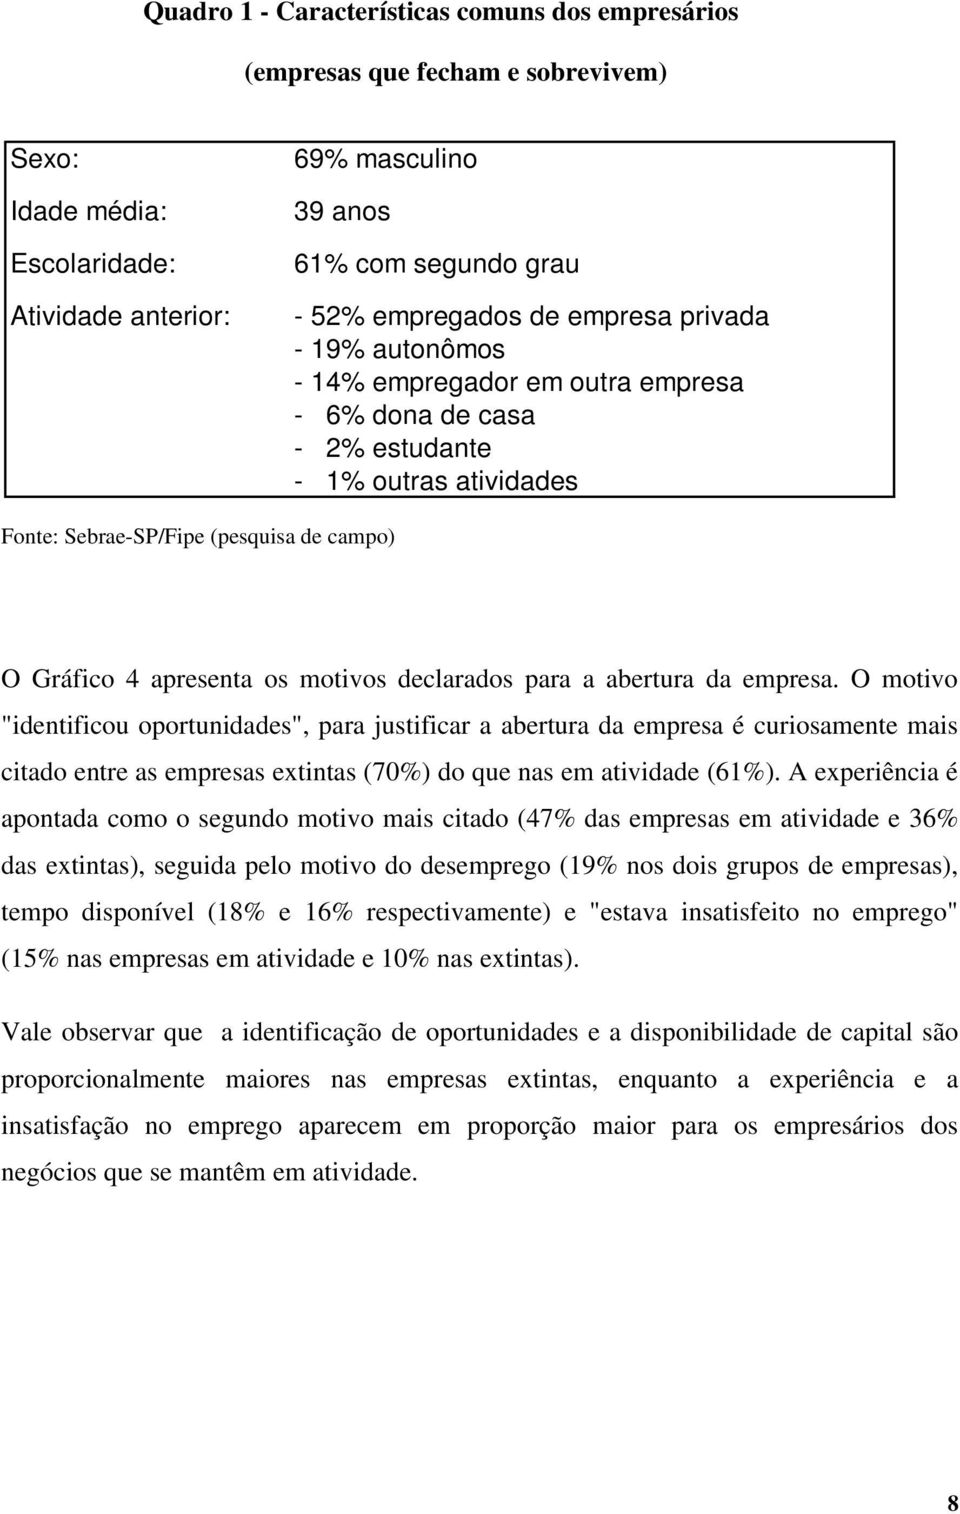 O motivo "identificou oportunidades", para justificar a abertura da empresa é curiosamente mais citado entre as empresas extintas (70%) do que nas em atividade (61%).